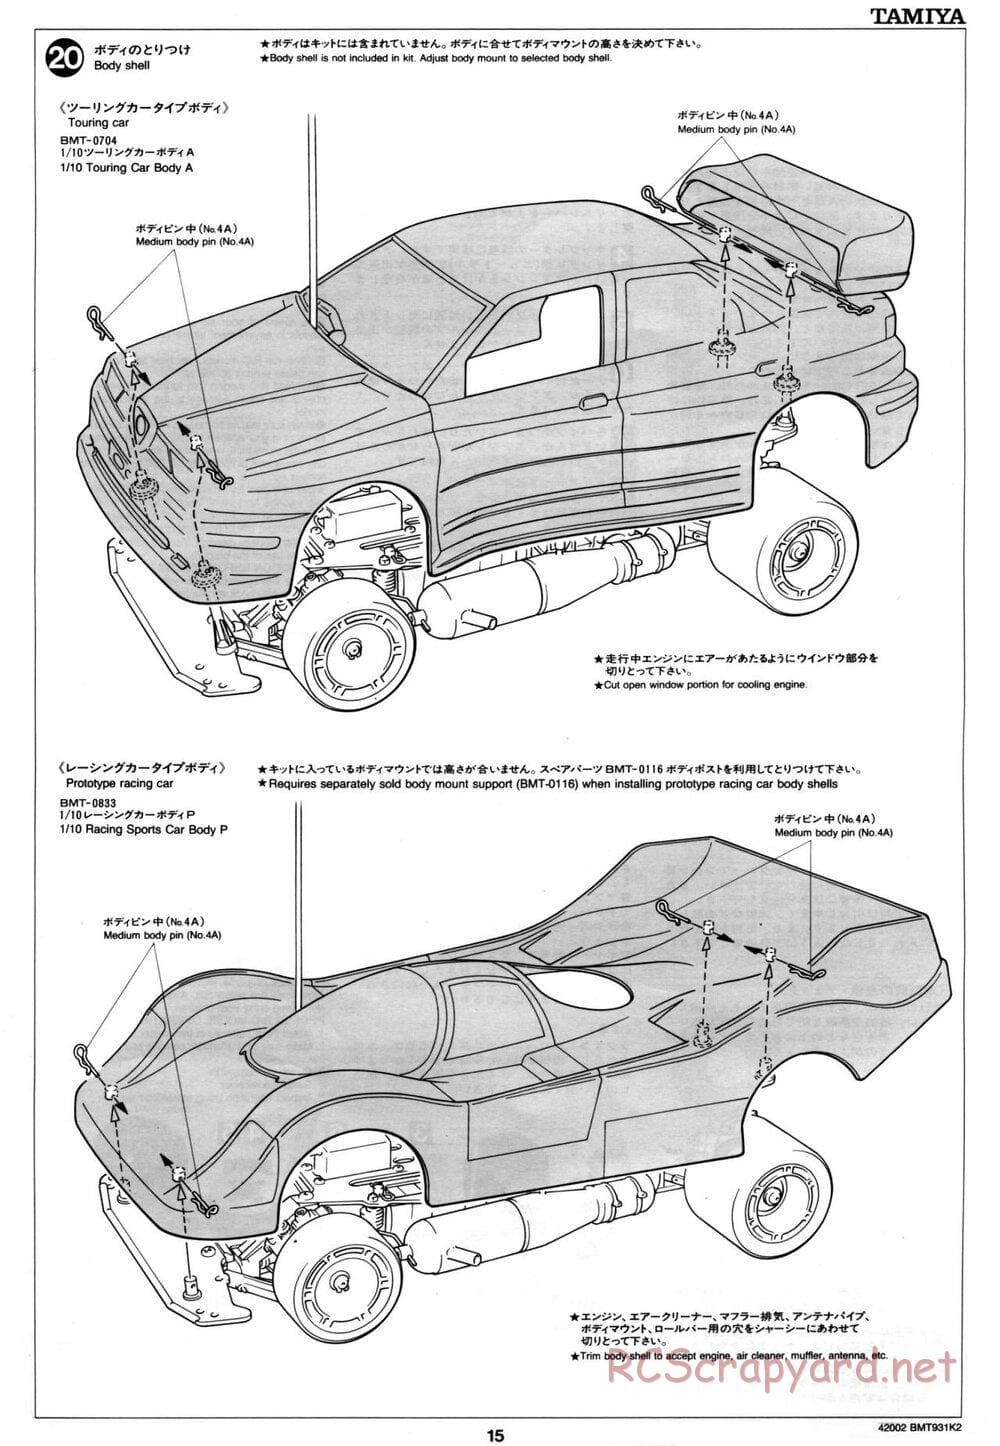 Tamiya - BMT 931 K2 Racing Chassis - Manual - Page 15